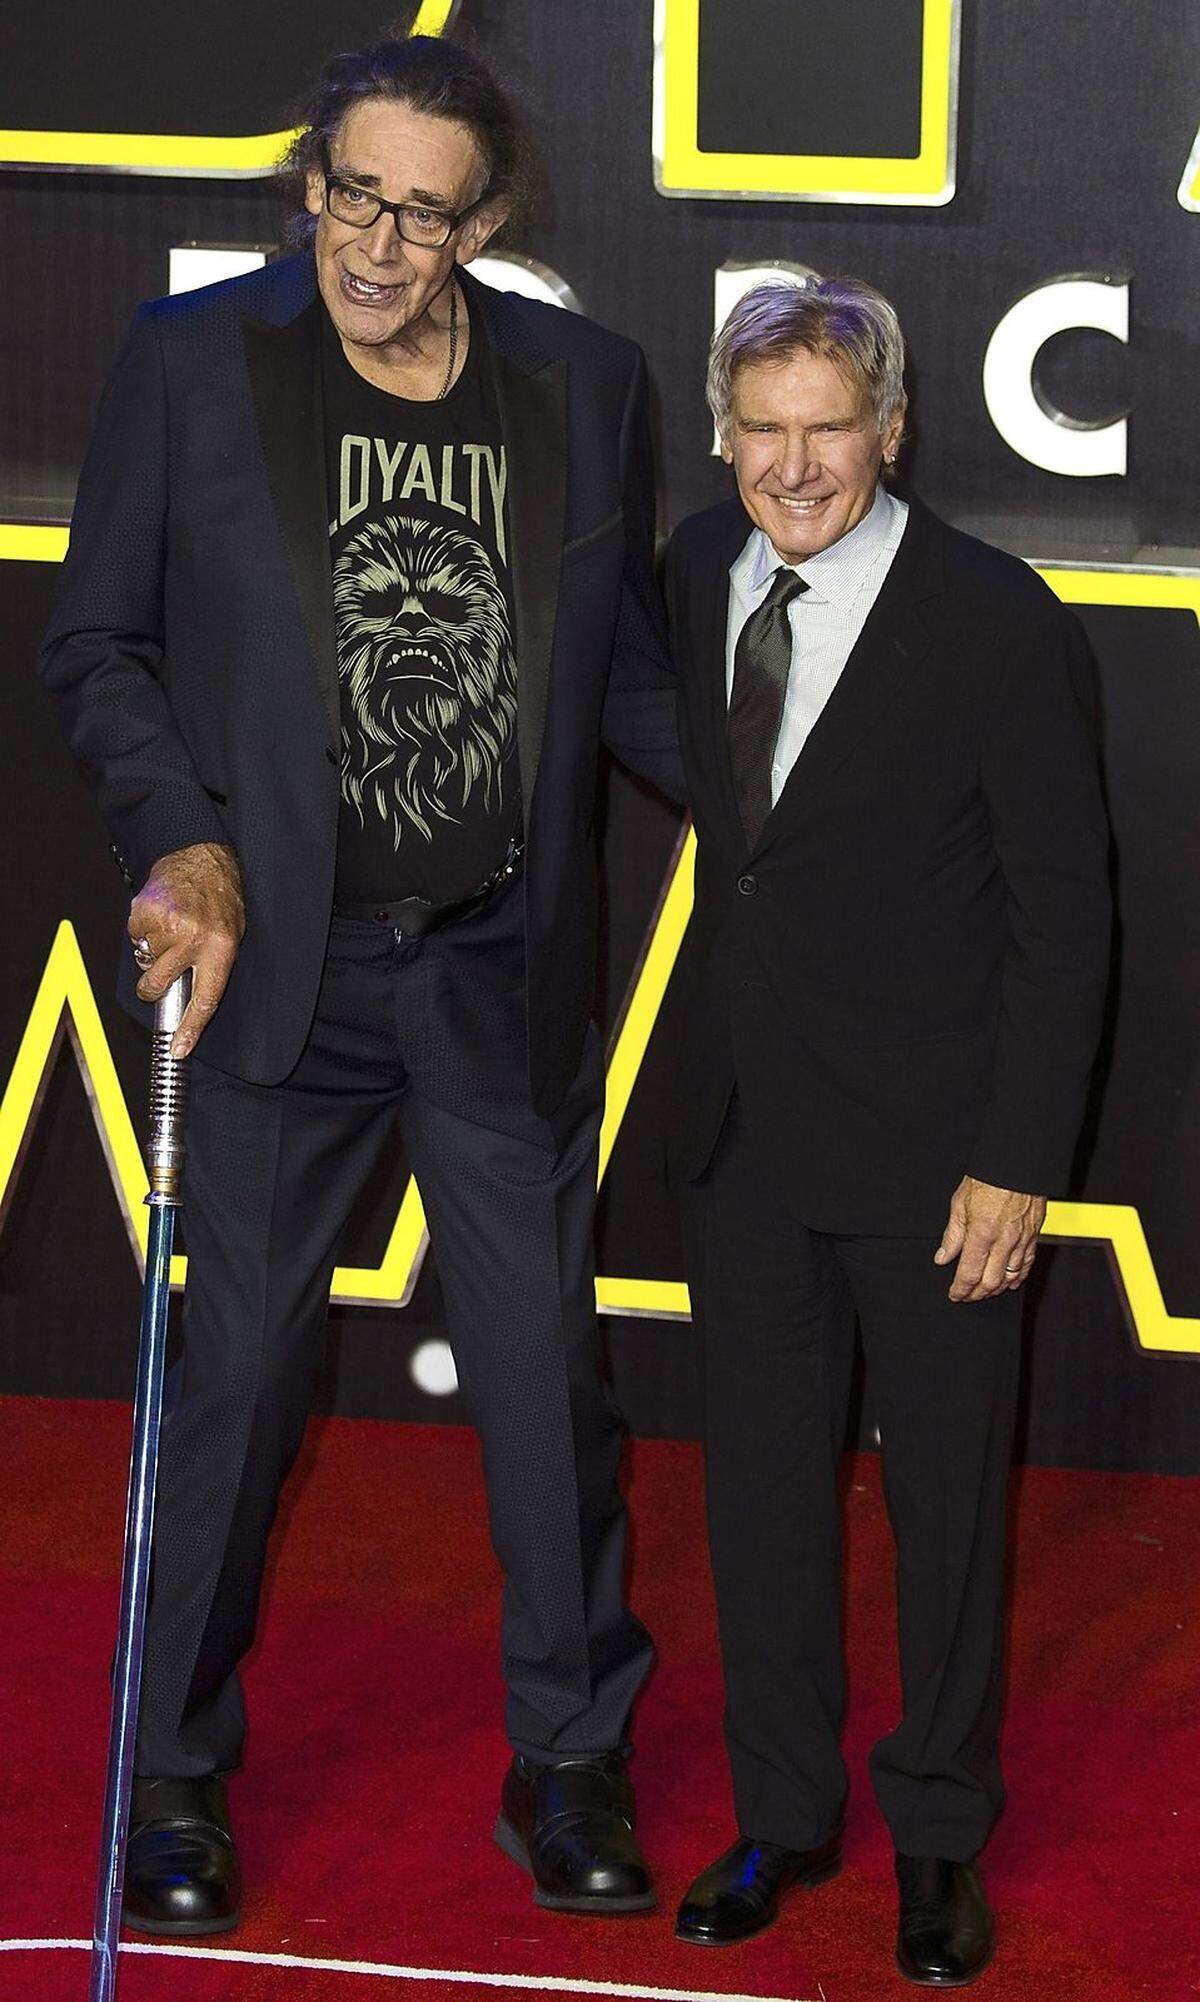 Der 2,21 m große Peter Mayhew hat die Rolle des Chewbacca in fünf Star-Wars-Filmen gespielt. Er wurde dabei vom finnischen Basketballnationalspieler Joonas Suotamo unterstützt, da Mayhew selbst im 7. Teil „Das Erwachen der Macht“ an Knieproblemen gelitten hatte.